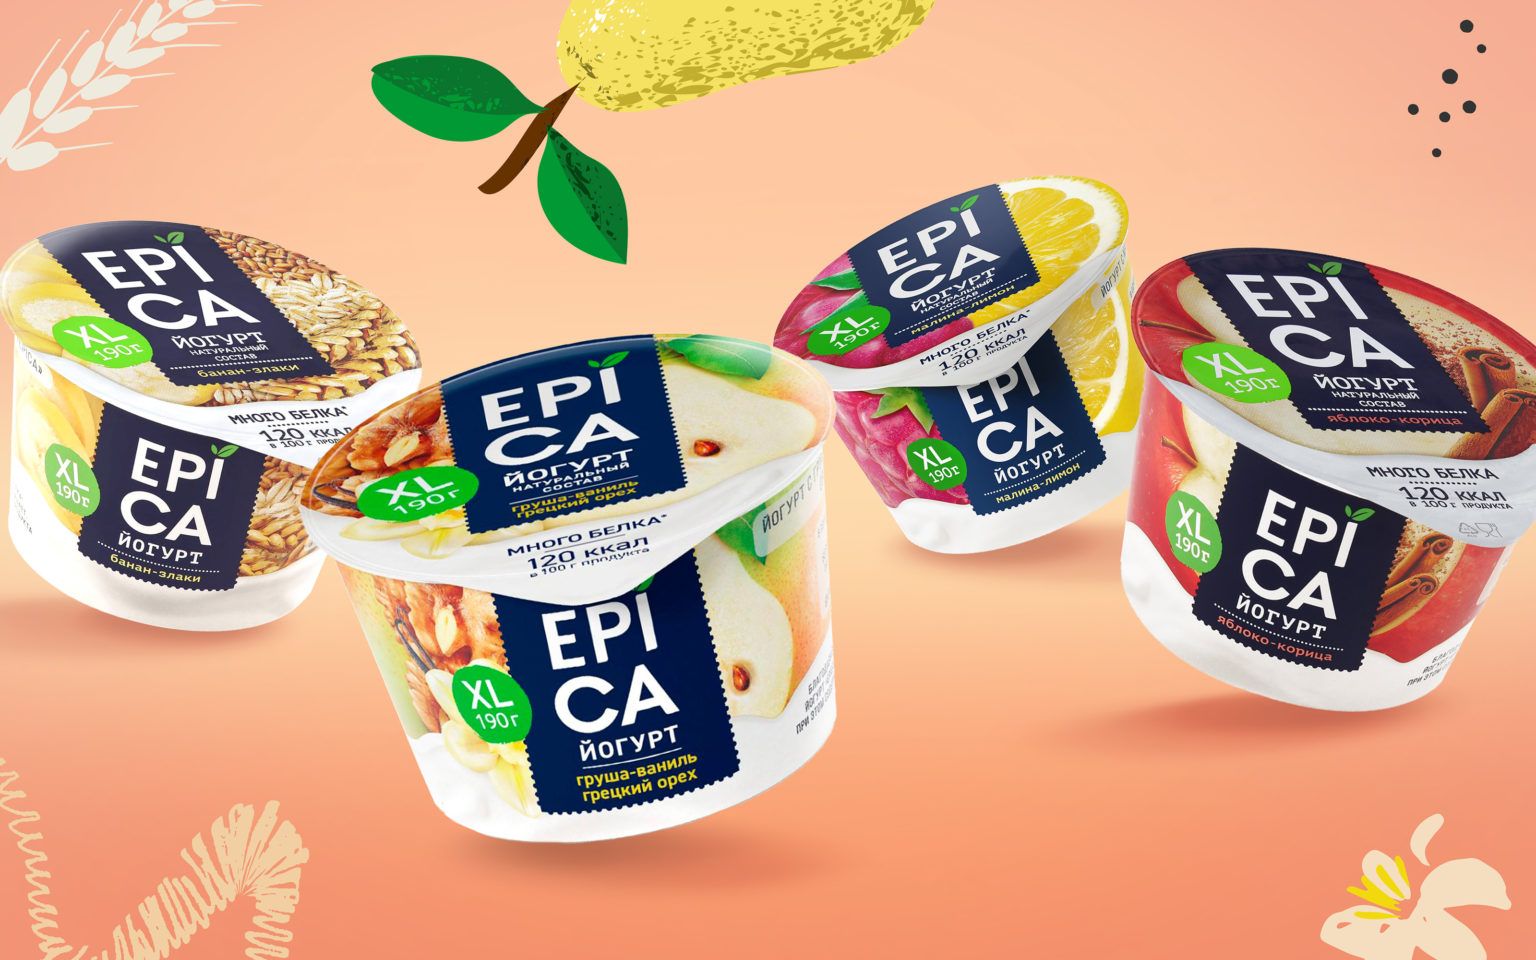 Рекламная Фото-студия Сергея Мартьяхина - Epica XL, фотография для фудзон упаковок йогурта